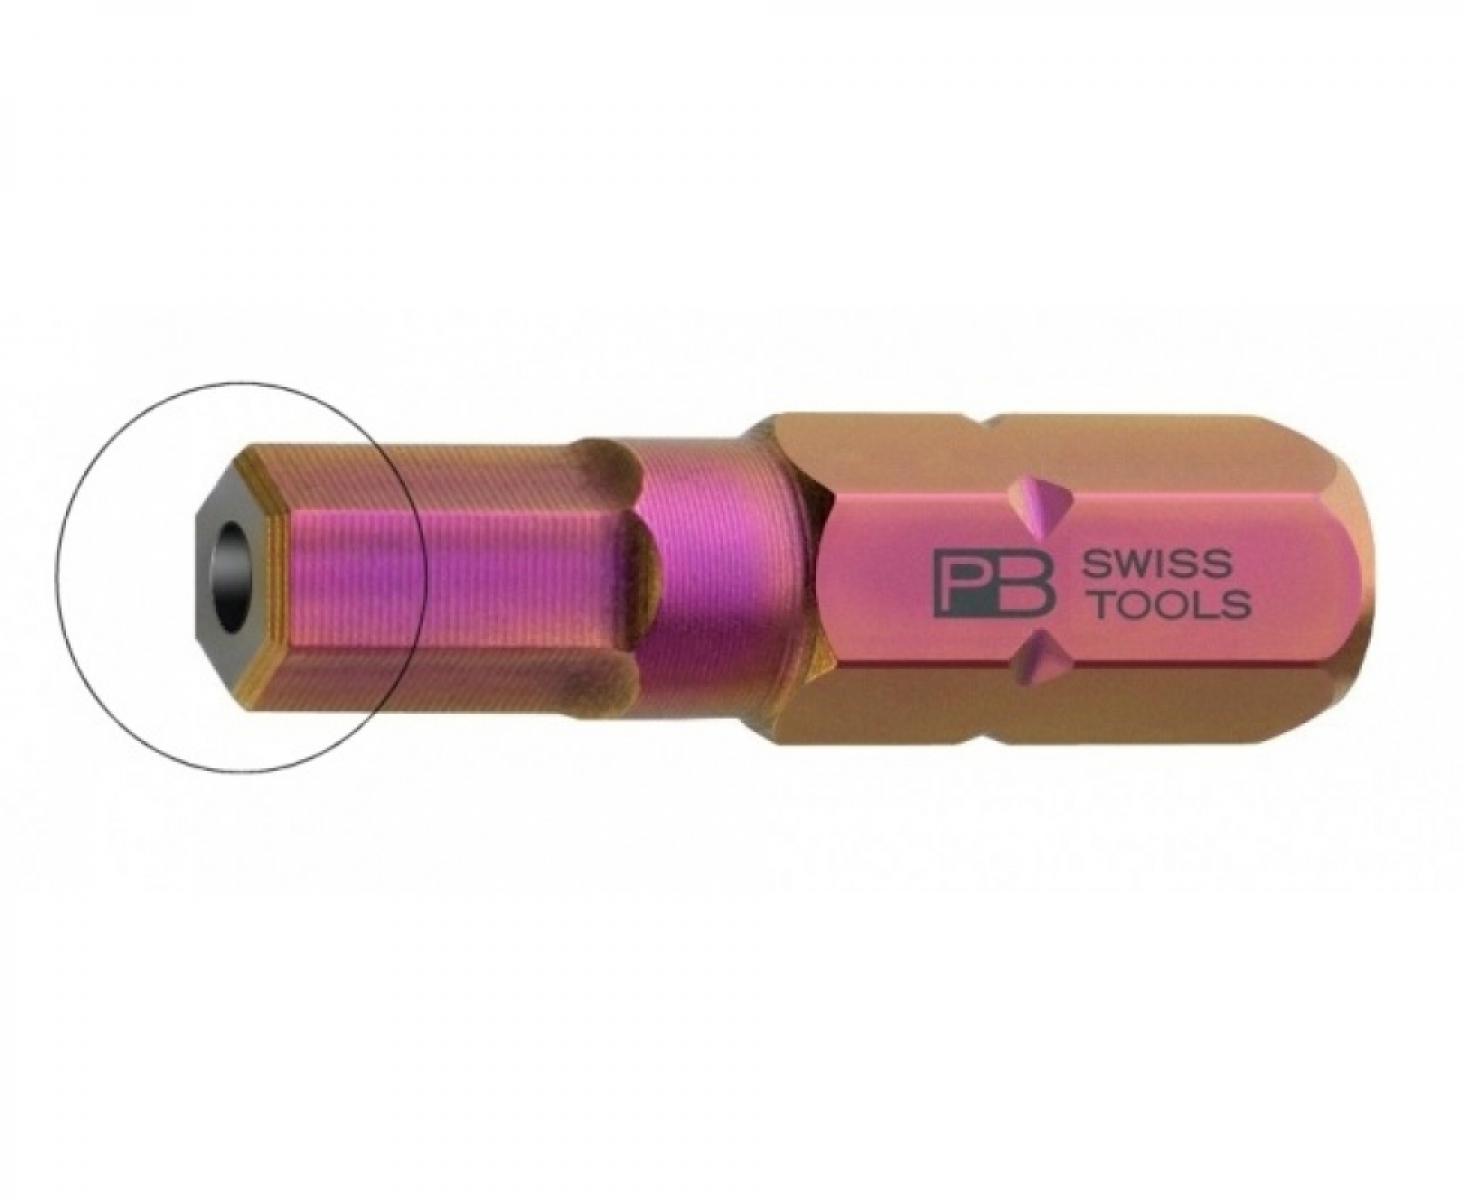 Бита HEX BO PrecisionBits C6,3 с внешним шестигранником 1/4 с отверстием PB Swiss Tools PB C6.210B/3 M3